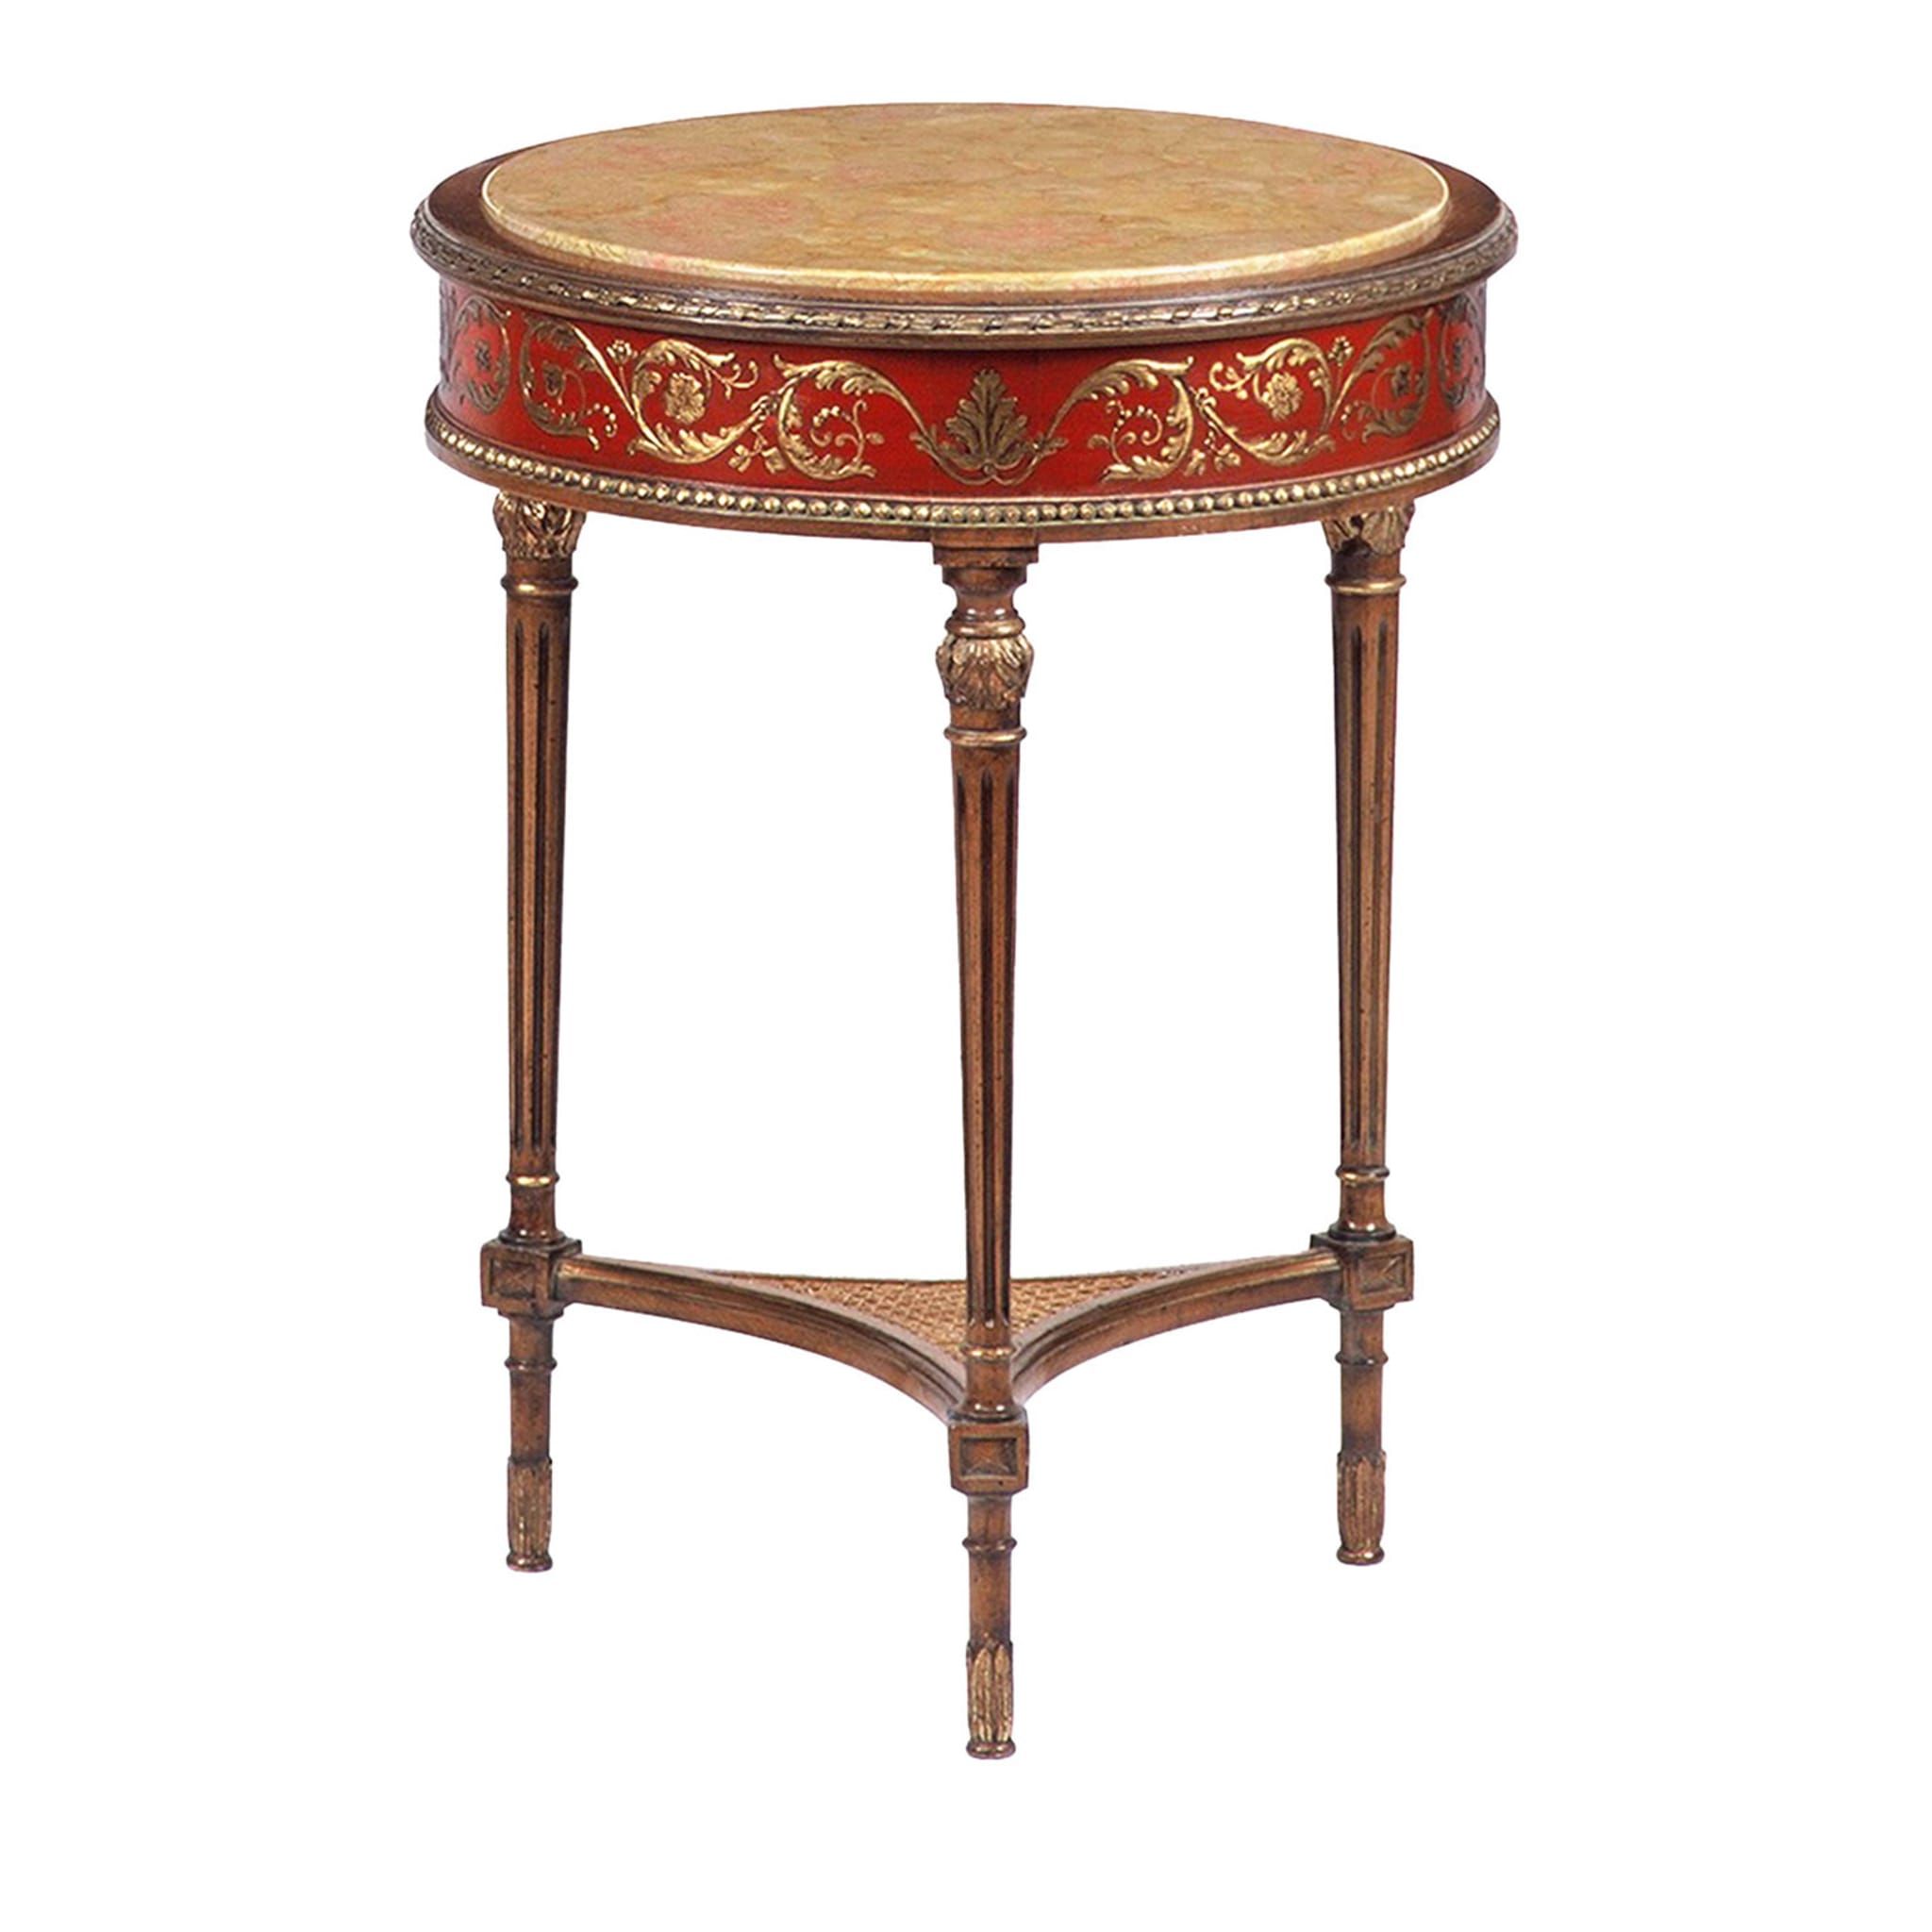 Table d'appoint rouge et or de style néoclassique français - Vue principale